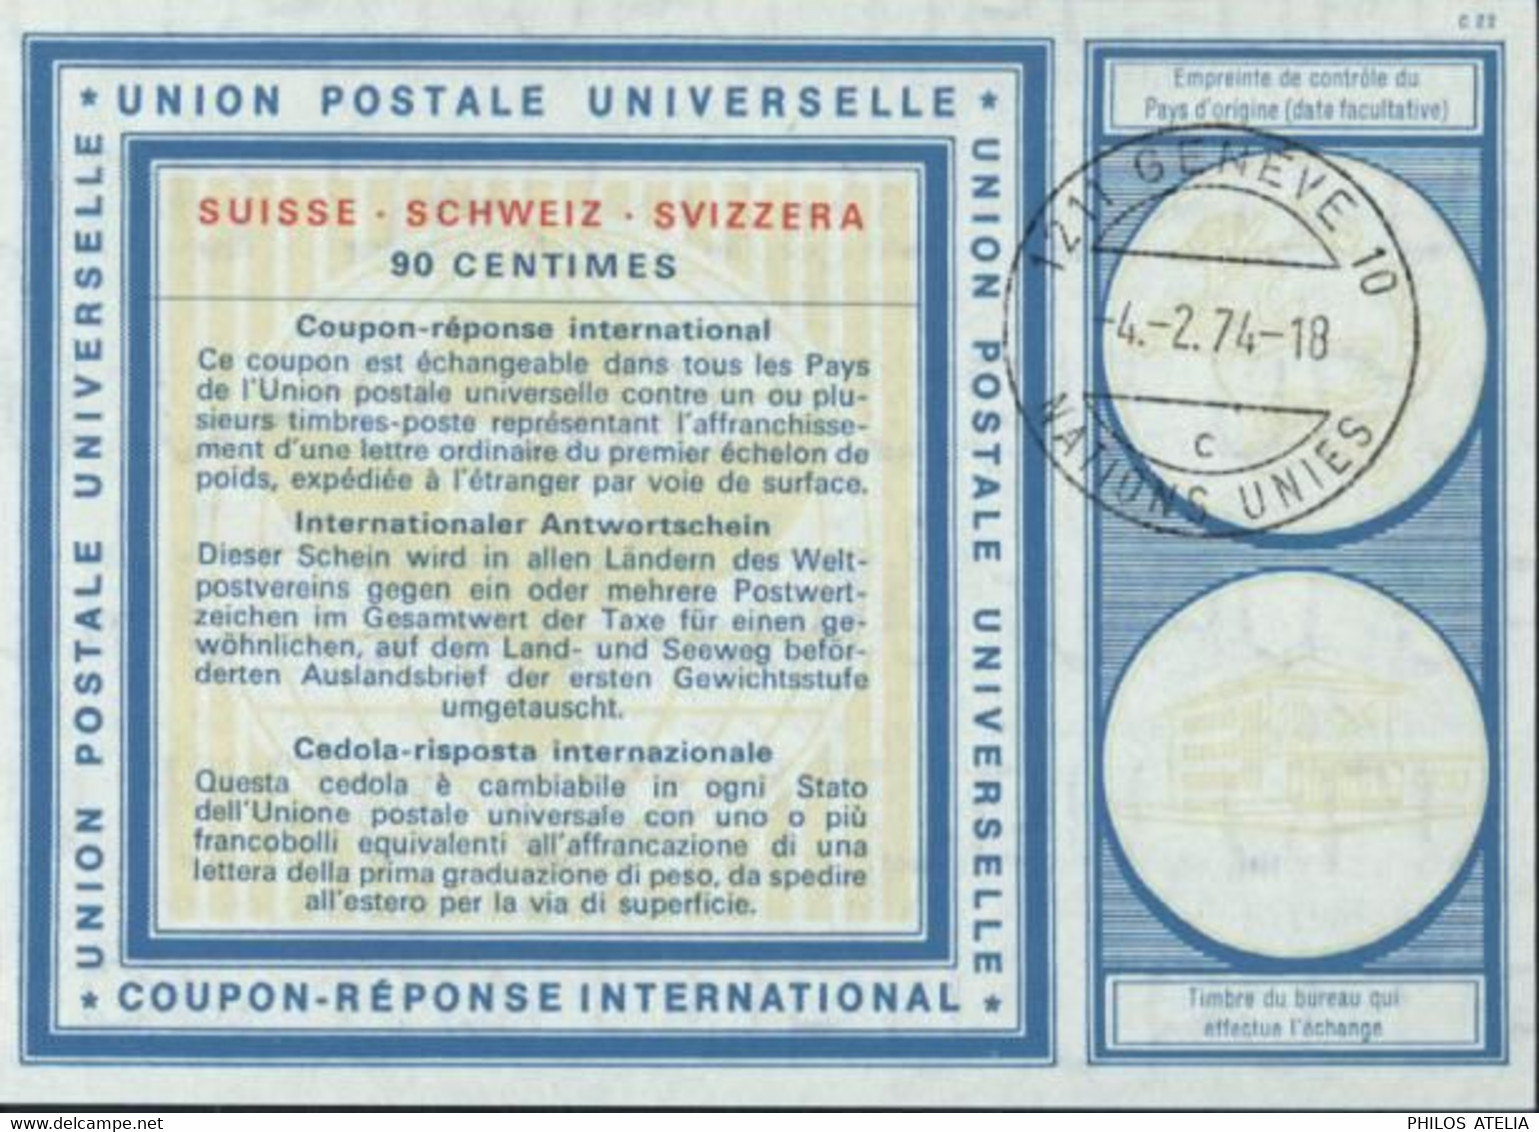 Coupon Réponse International UPU Suisse 90 Cts CAD 1211 Genève 10 Nations Unies 4 2 74 - 18 C - Briefe U. Dokumente